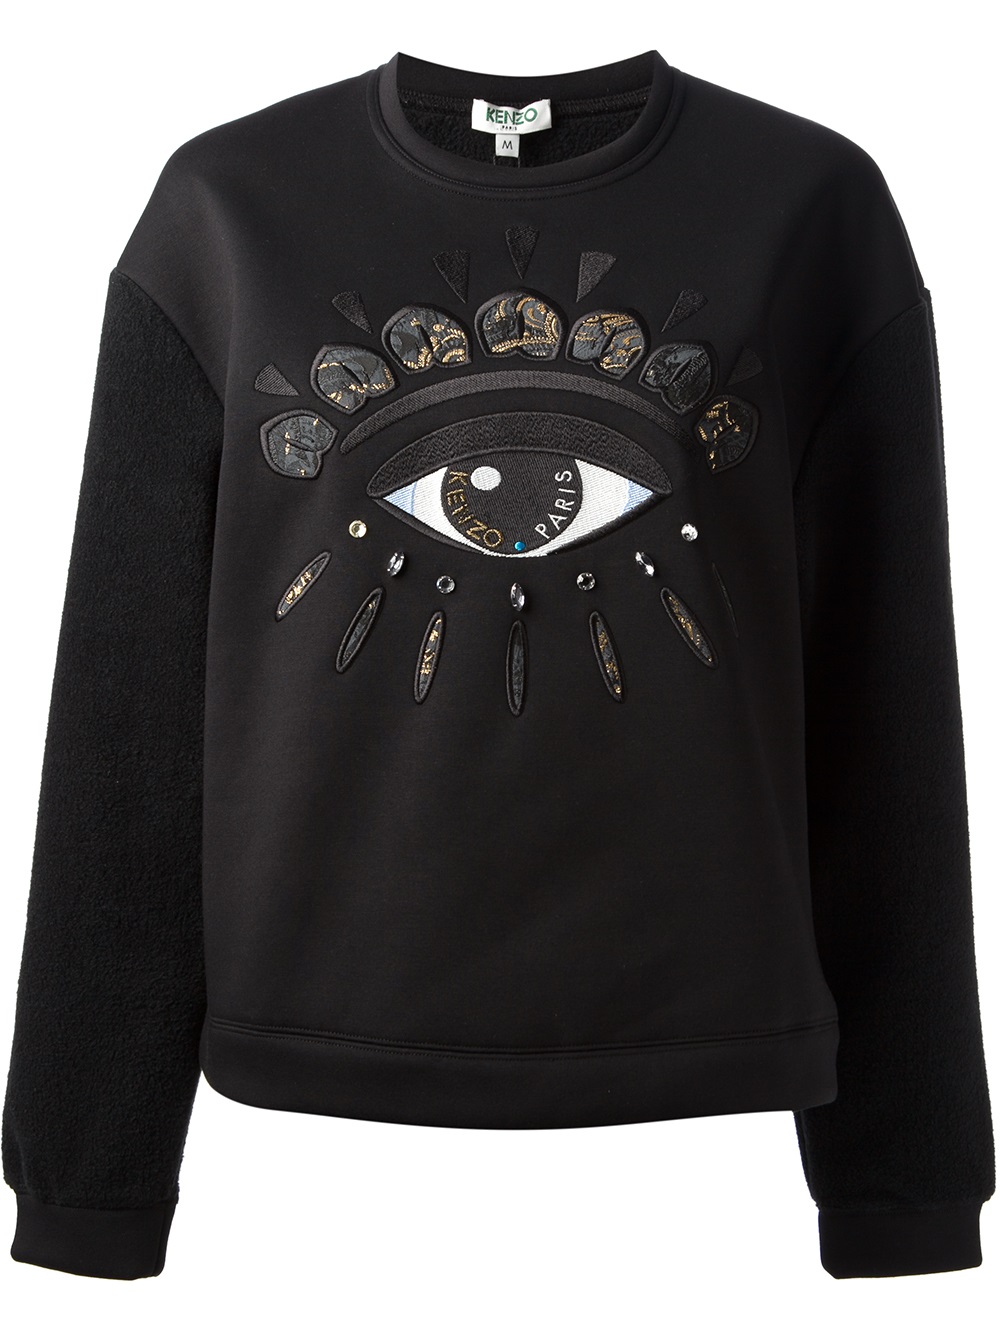 Lyst - KENZO Eye Sweater in Black